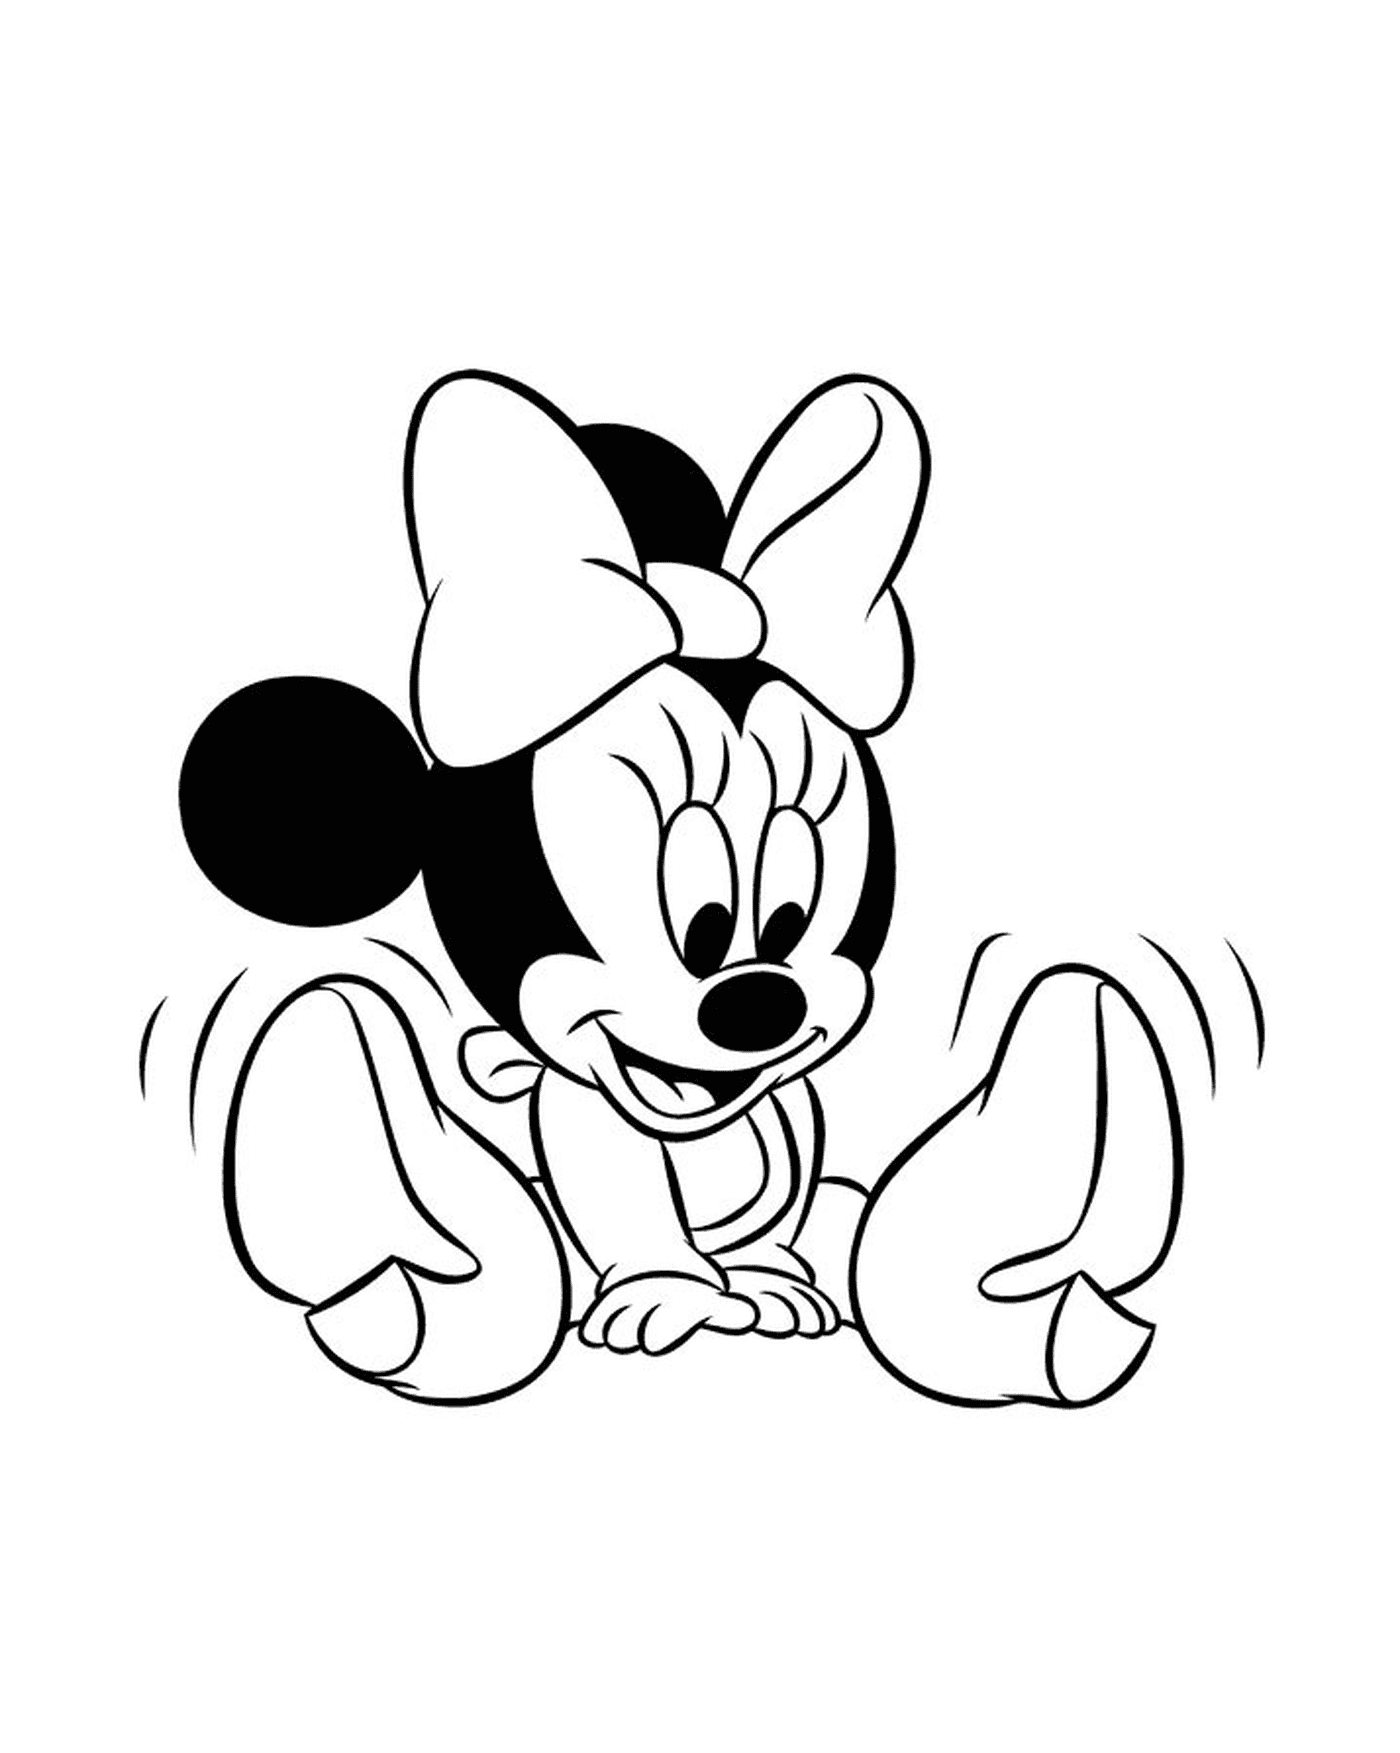  Minnie Mouse bebê sentado no chão, pernas cruzadas 